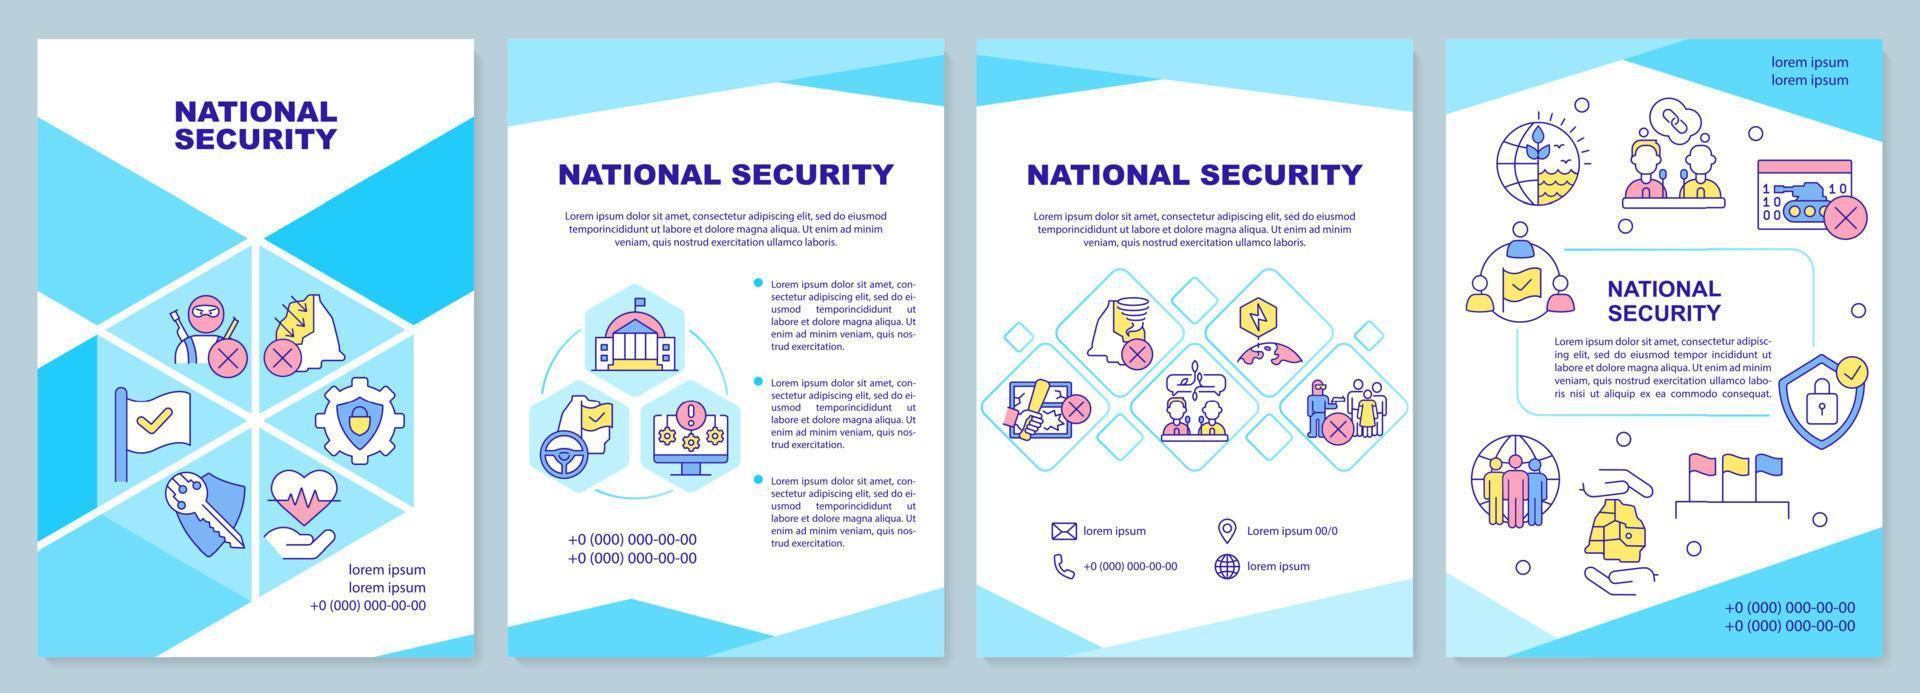 blaue broschürenvorlage zur nationalen sicherheit. staatlicher Schutz. Broschürendesign mit linearen Symbolen. 4 Vektorlayouts für Präsentationen, Jahresberichte. vektor